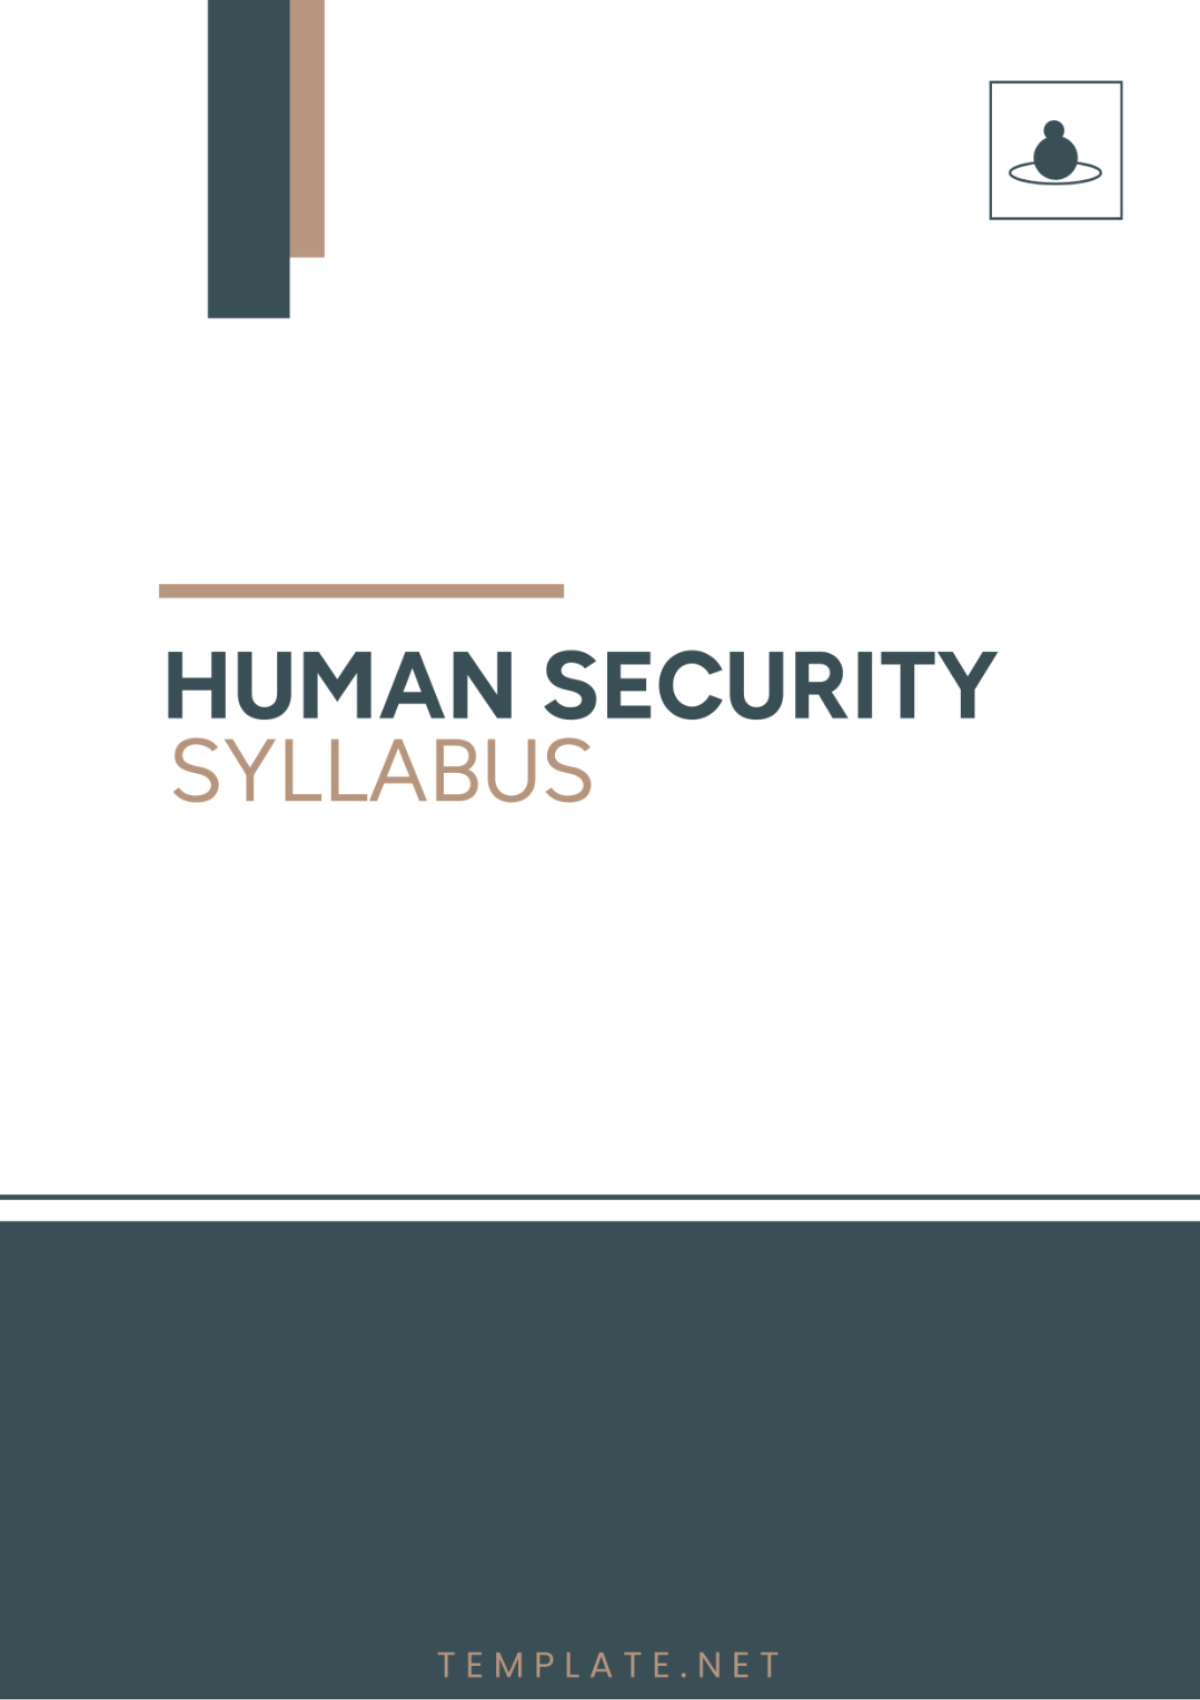 Human Security Syllabus Template